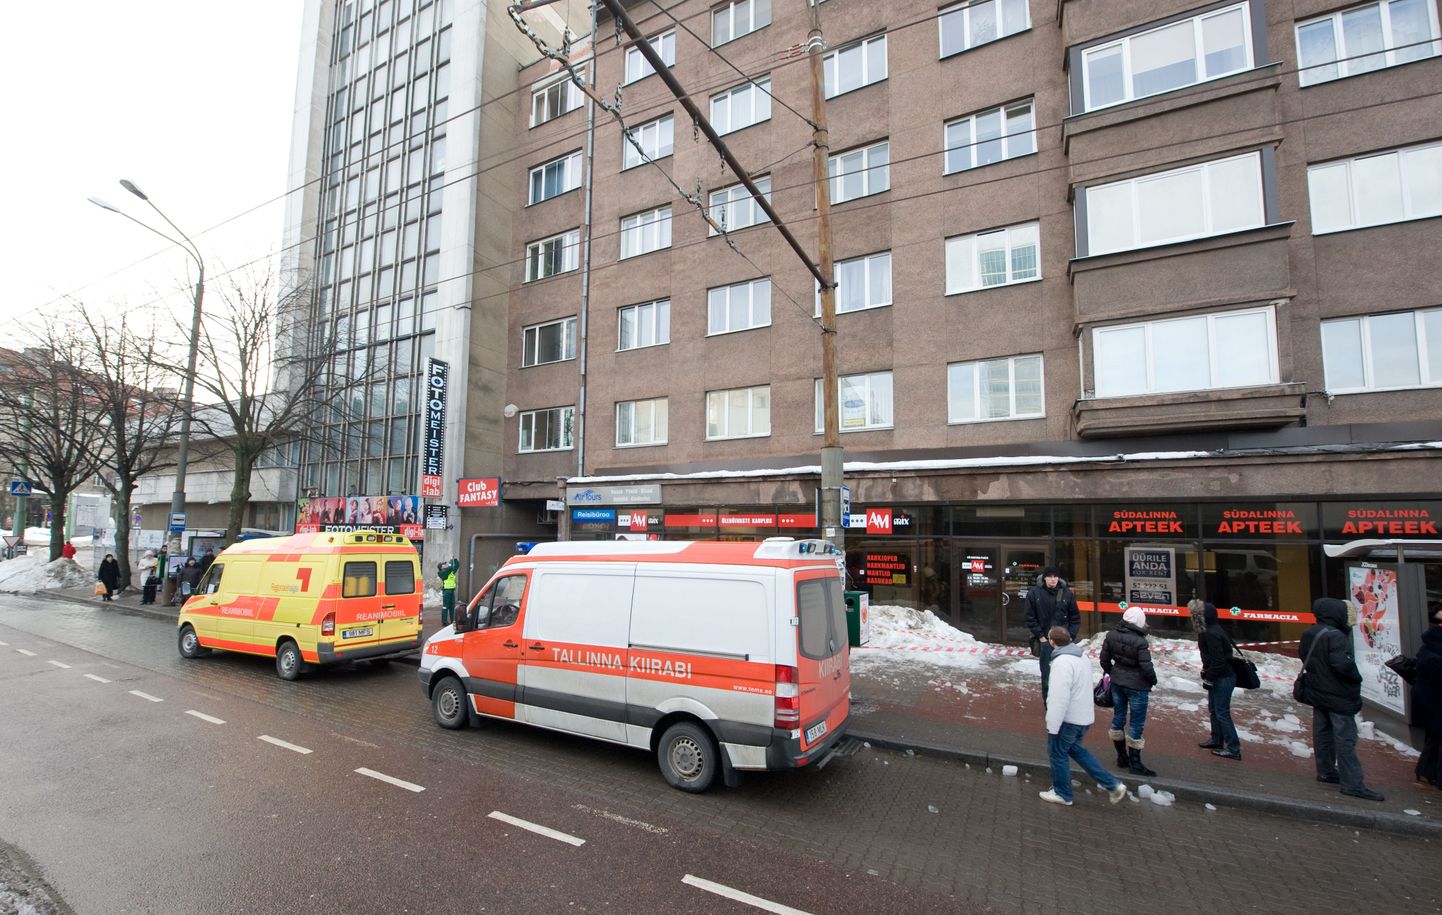 Kiirabi Tallinna kaubamaja trollipeatuses, kus tütarlapsele jääkamakas pähe kukkus.